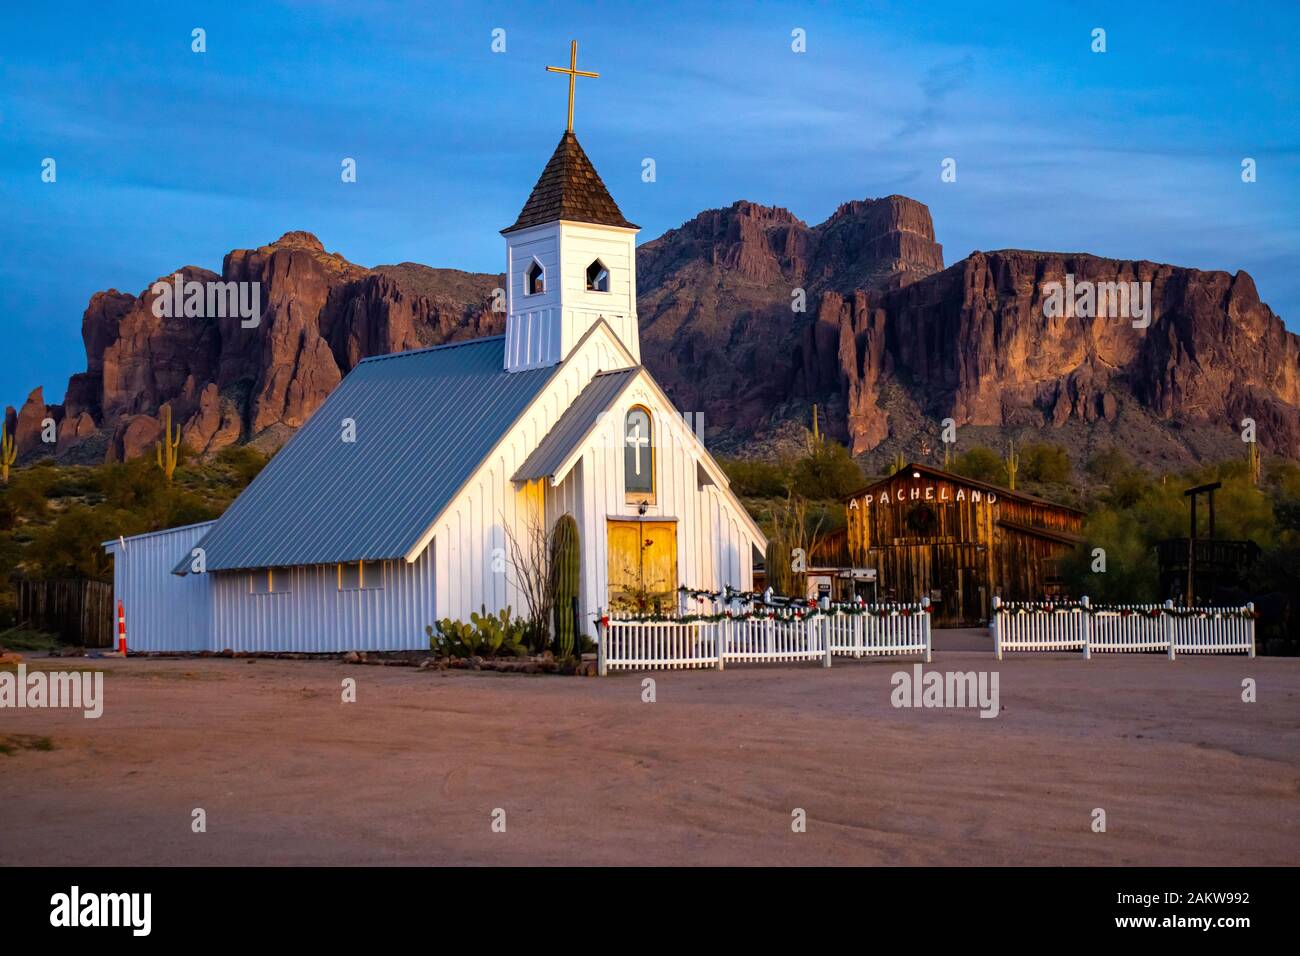 La Chapelle Commémorative Elvis À Apache Junction, Arizona. Assis majestueusement au coucher du soleil sous les montagnes Superstition. Banque D'Images